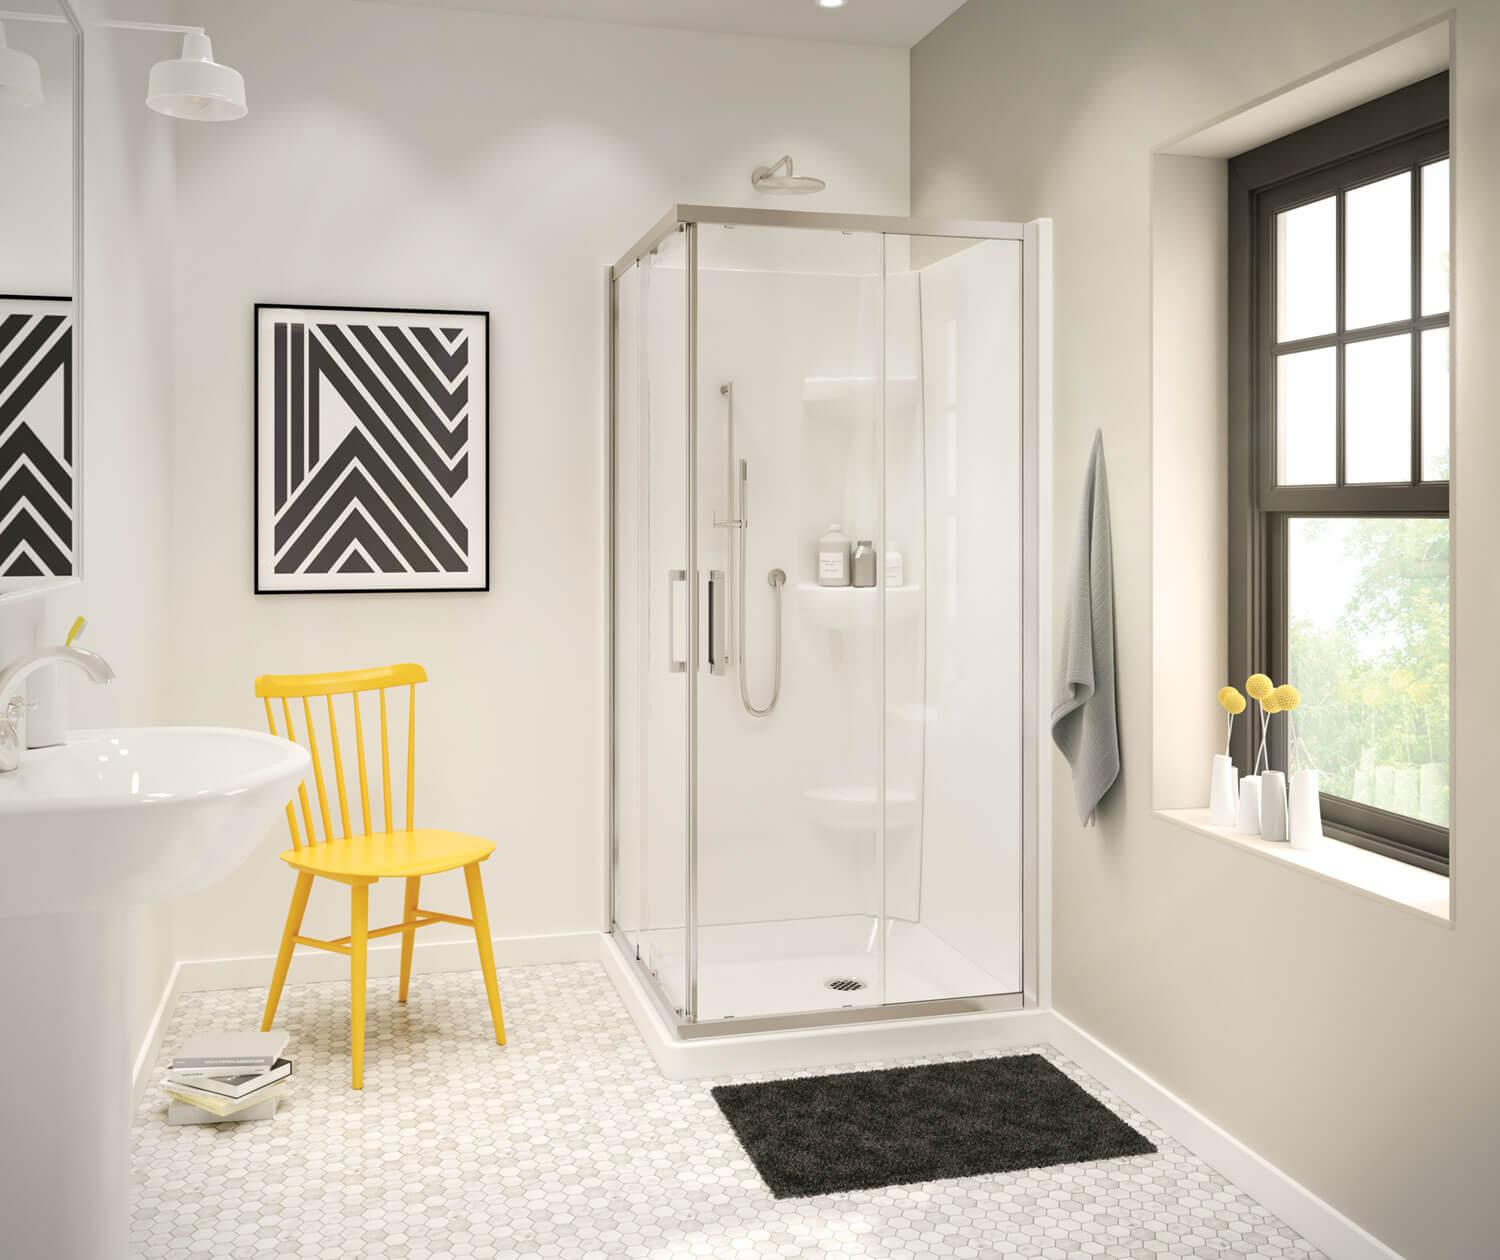 Water-Repellent Coating Shower Doors at